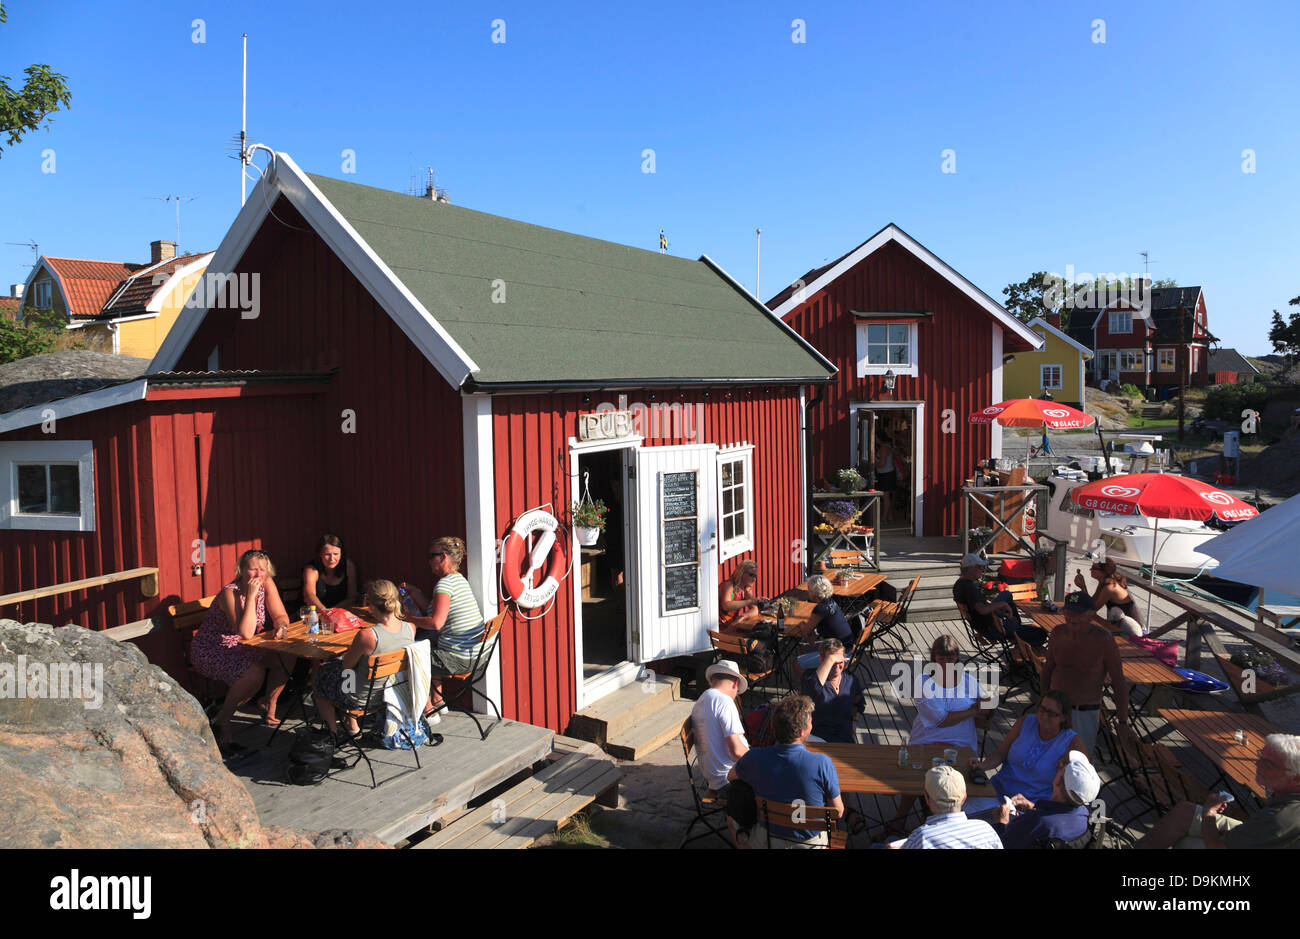 Cafe, port de l'île de Landsort (Oeja), archipel de Stockholm, côte de la mer Baltique, la Suède, Scandinavie Banque D'Images